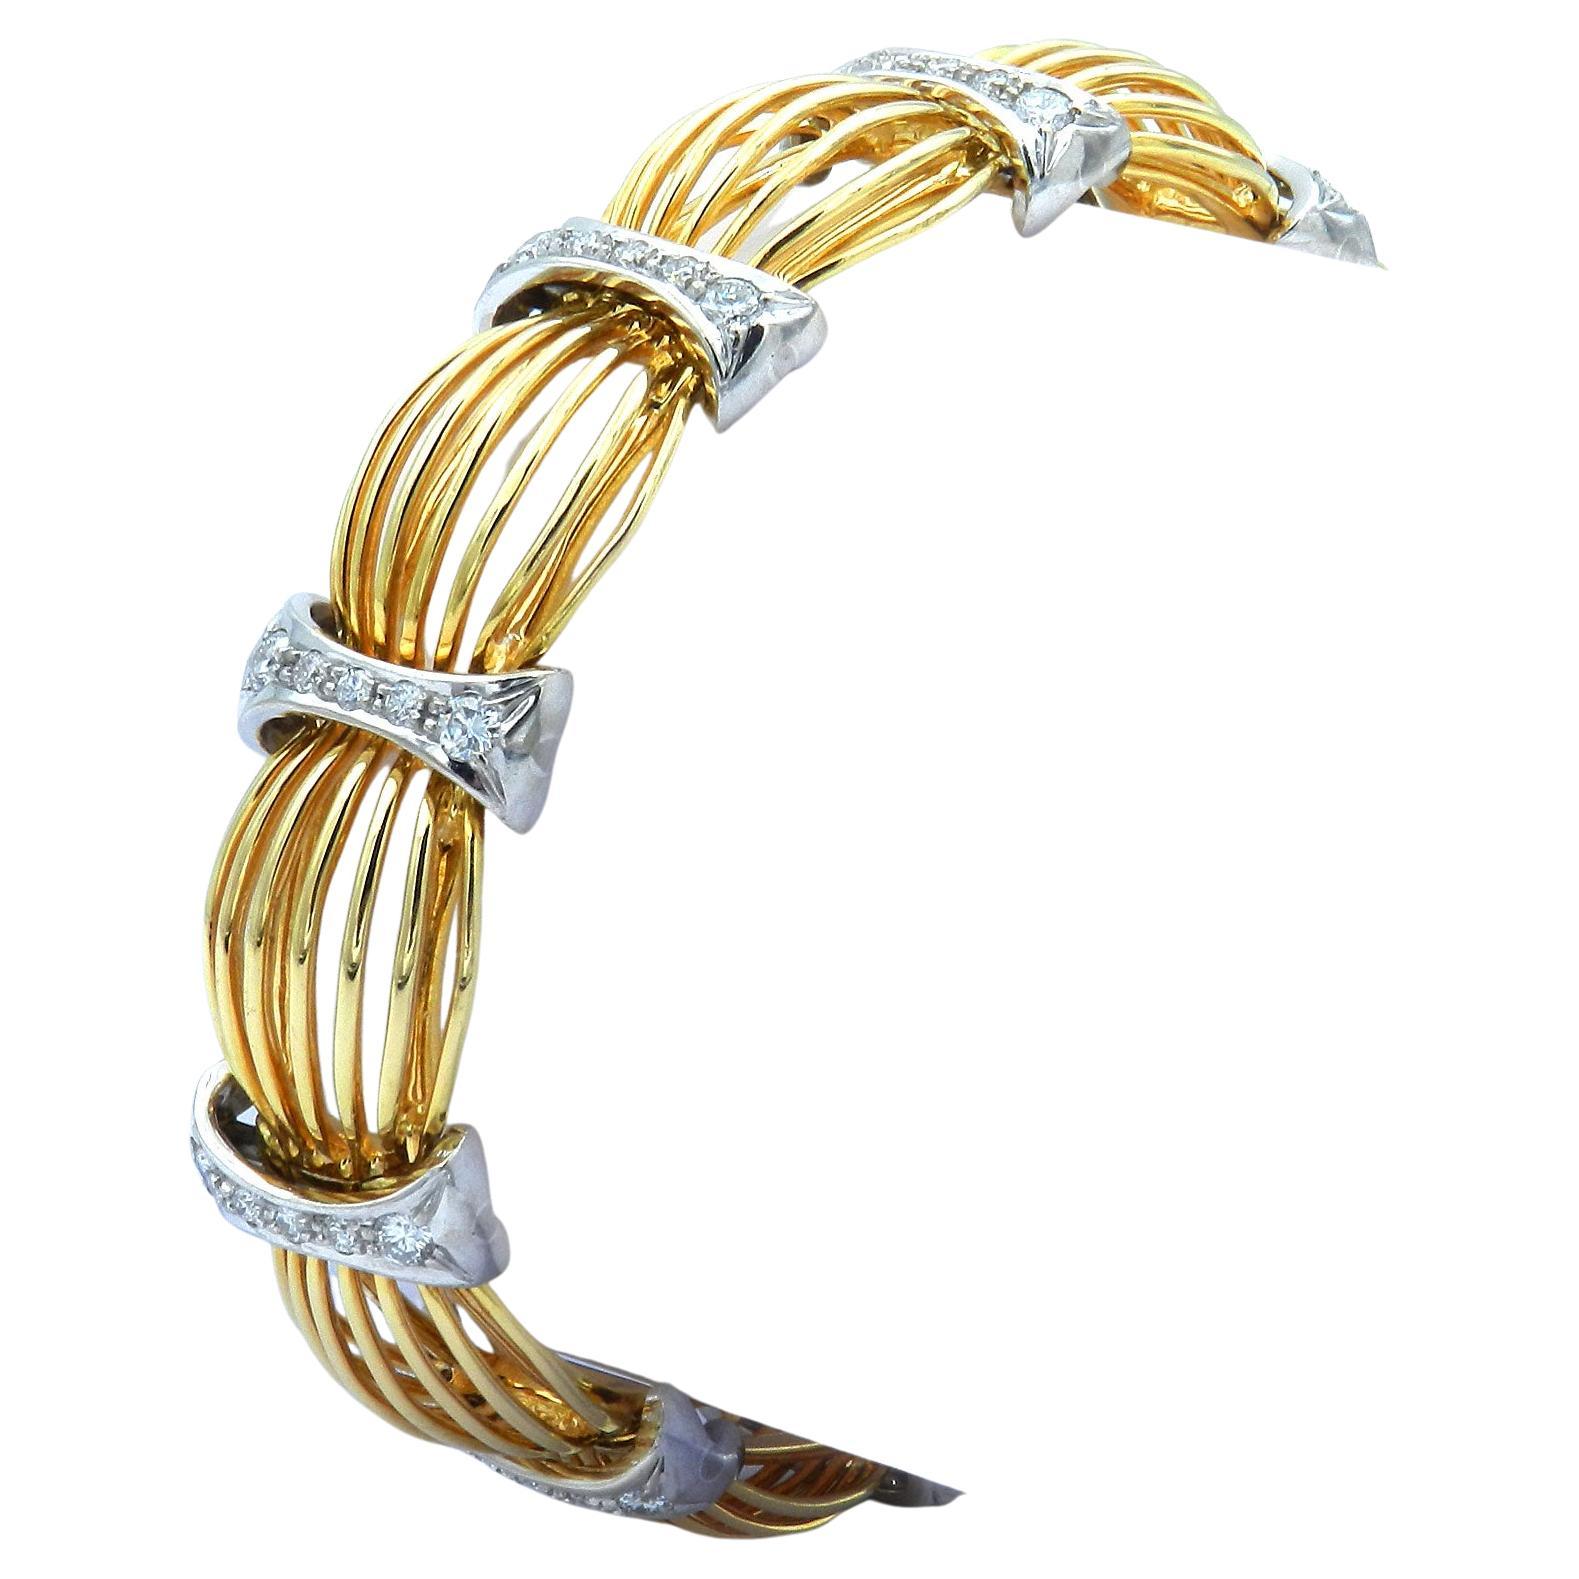 Retro 1,8 Karat Diamant-Gliederarmband aus 18 Karat zweifarbigem Gold, um 1950

Elegantes Diamantarmband aus 18 Karat Roségold, dessen lineare, durchbrochene Glieder von weißgoldenen, mit insgesamt 50 Brillanten besetzten Stegen gebündelt werden,